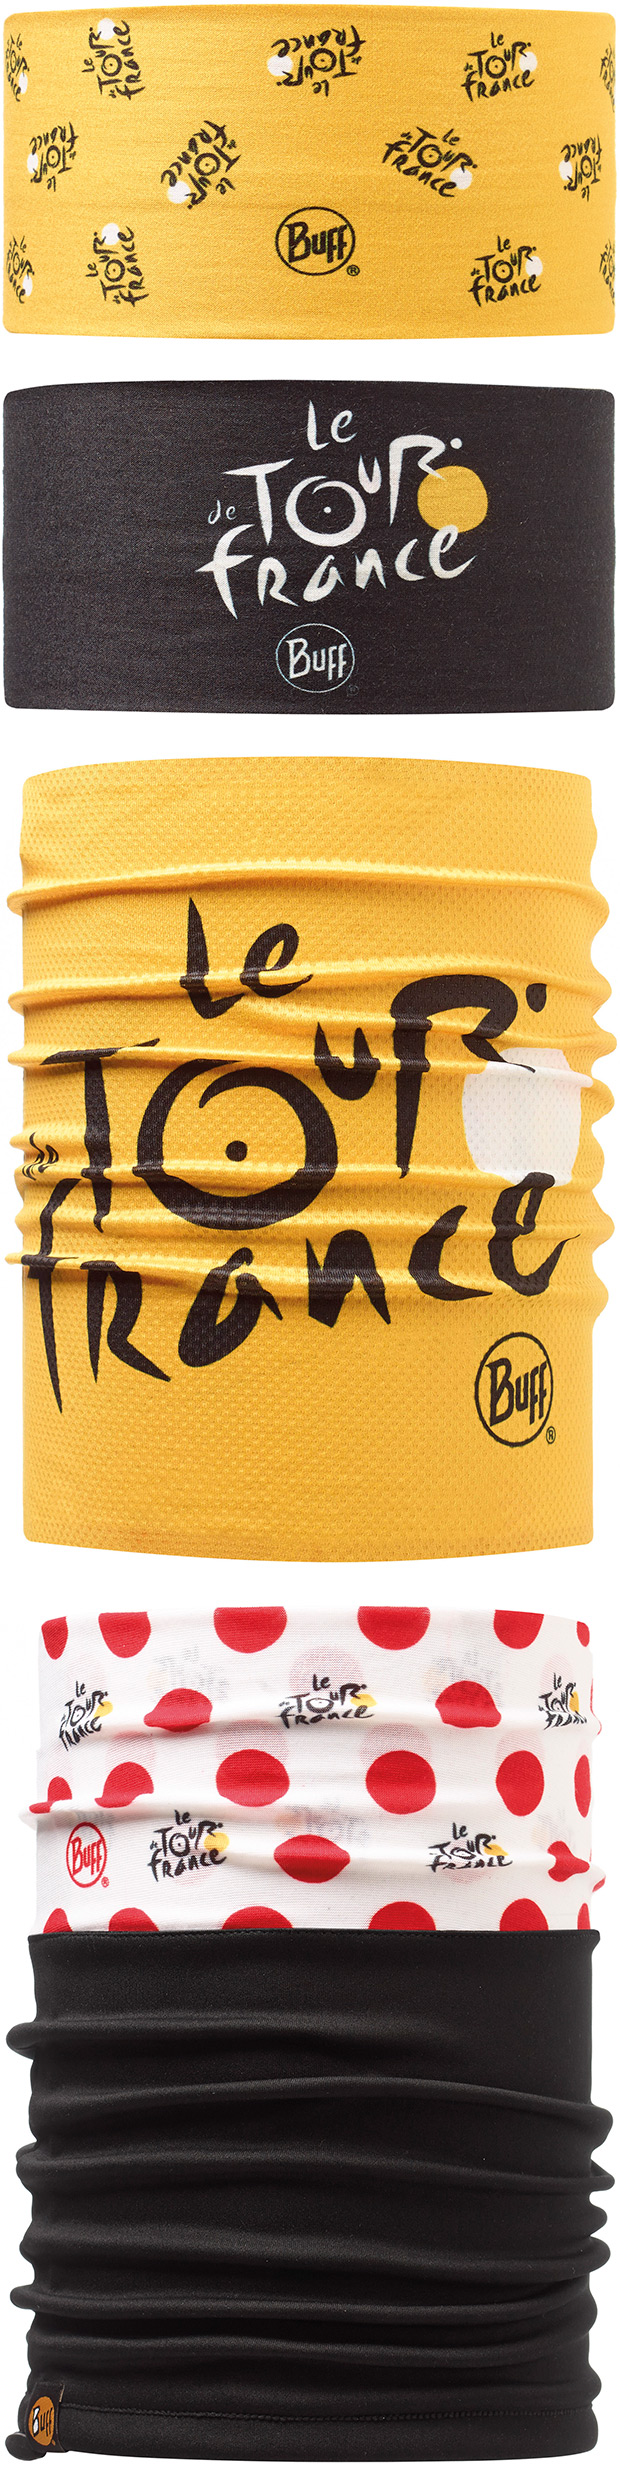 Nueva gama de productos BUFF inspirados en el Tour de Francia